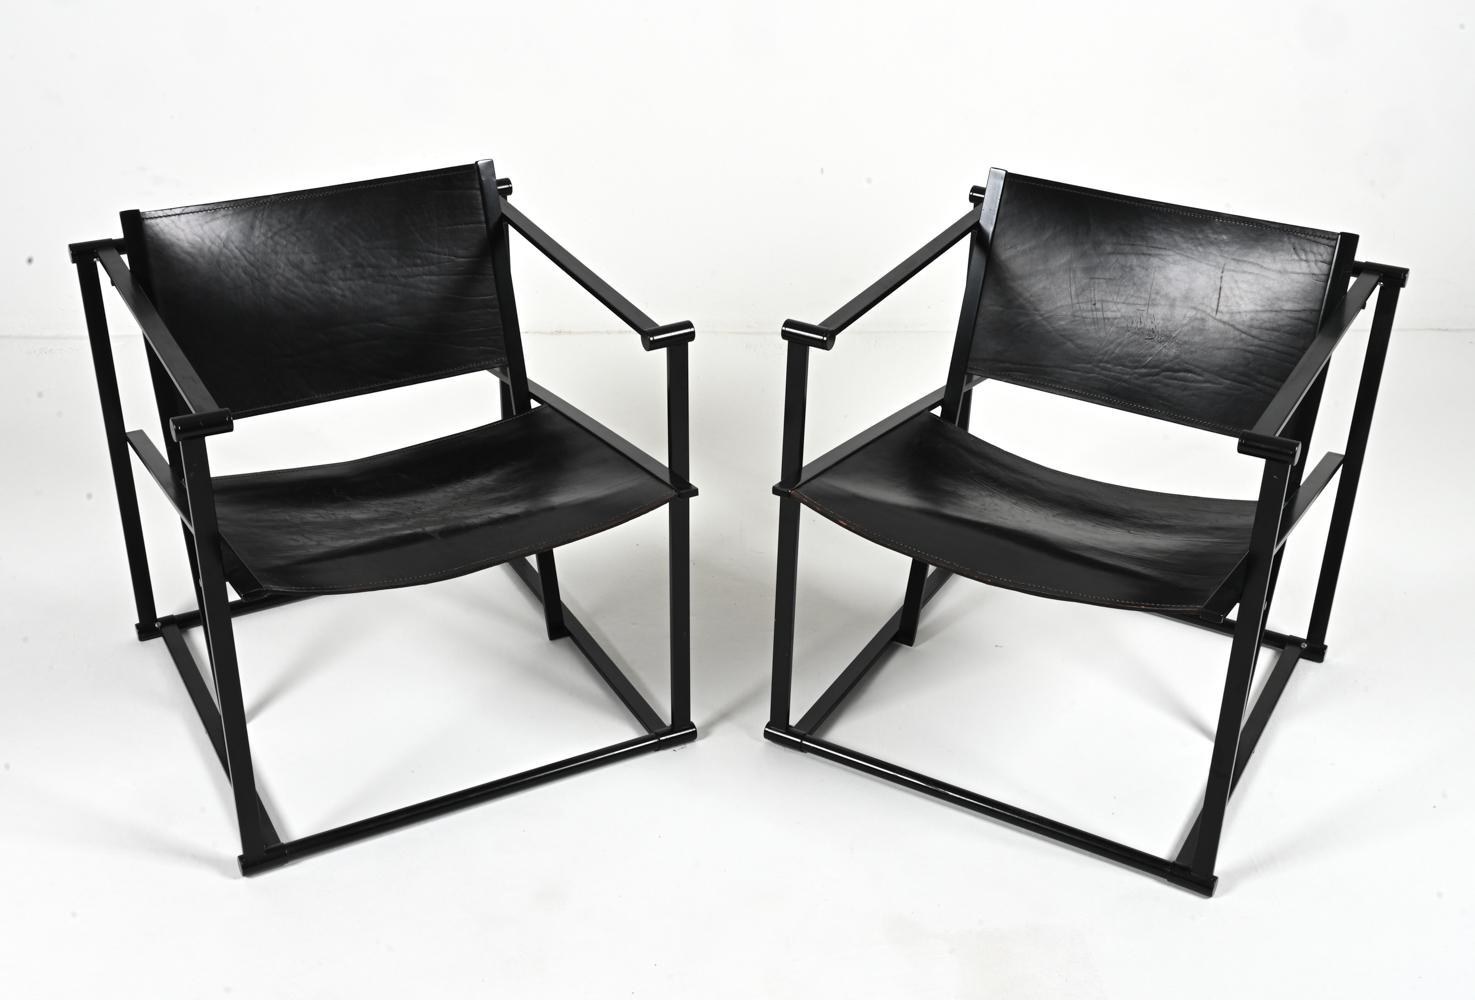 Le minimalisme néerlandais a trouvé un champion durable dans la chaise longue FM62 de Radboud Van Beekum pour Pastoe. Conçue avec une précision géométrique, cette chaise présente une silhouette cubique ouverte intemporelle qui embrasse le drame de